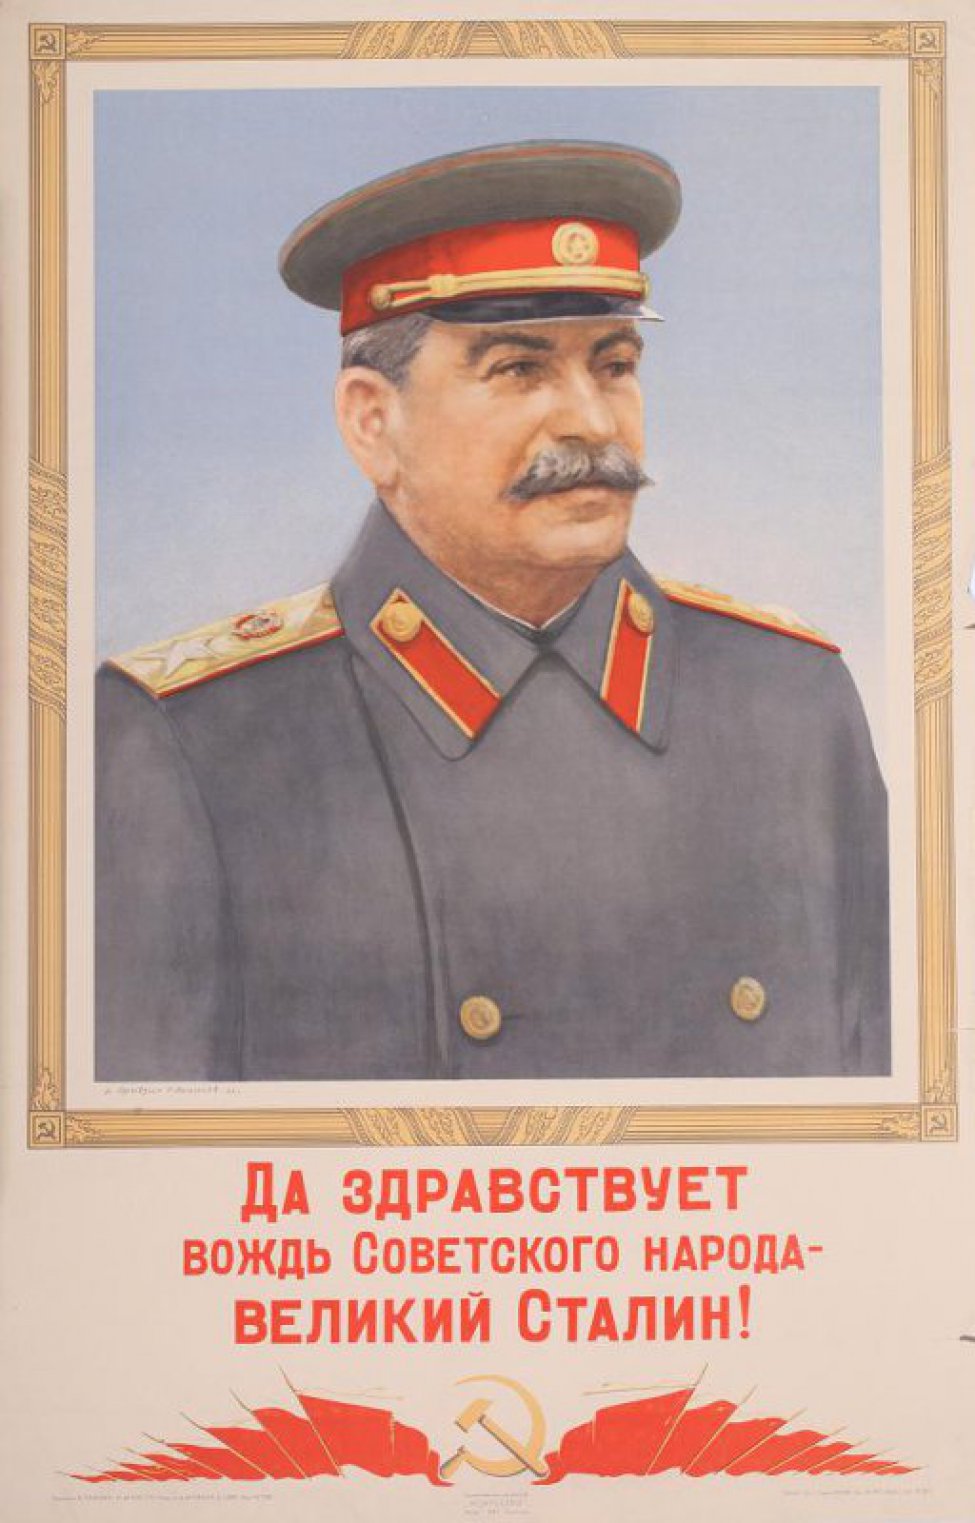 Изображен в багетной раме погрудный портрет И.В.Сталина в военной форме. Под рамкой текст. Внизу- в центре серп и молот, по сторонам по 8 знамен. Слева в нижнем углу: " В.Правдин. Н.Денисов  46г."